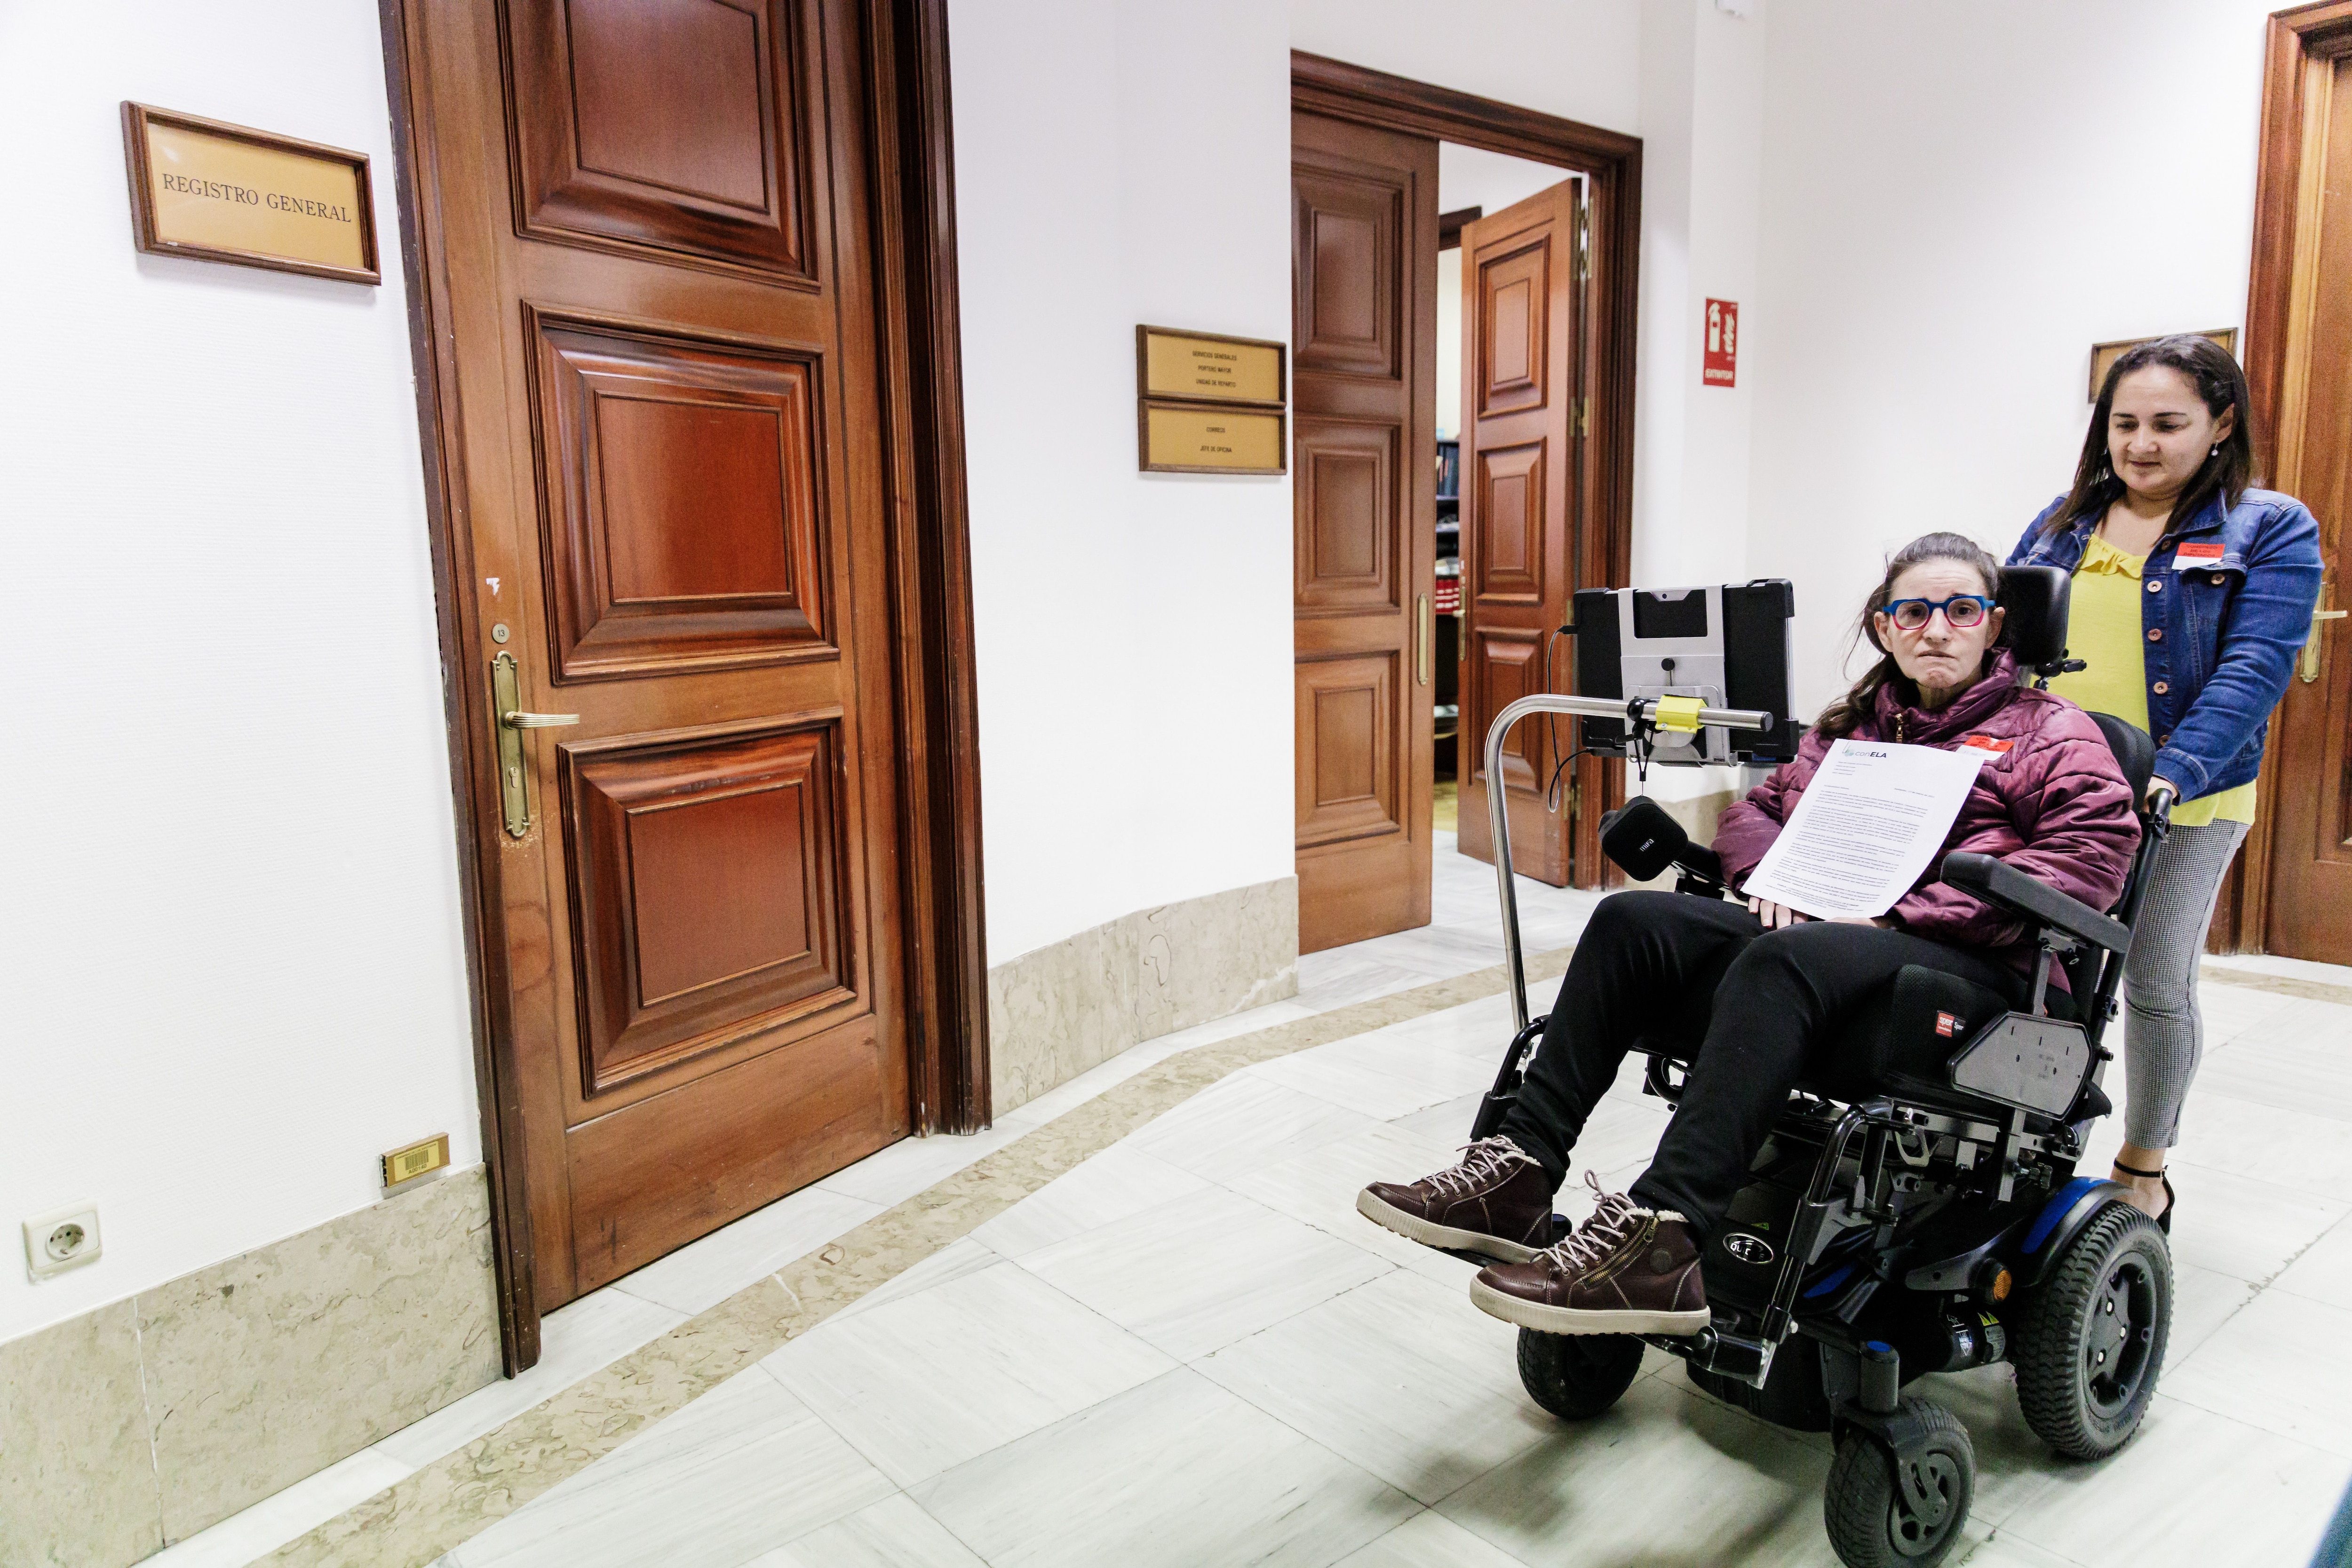 Una persona afectada de ELA (esclerosis lateral amiotrófica) a su llegada a registrar la petición de que se desbloquee la tramitación de la Ley ELA, en el Congreso de los Diputados, a 17 de marzo de 2023, en Madrid (España).